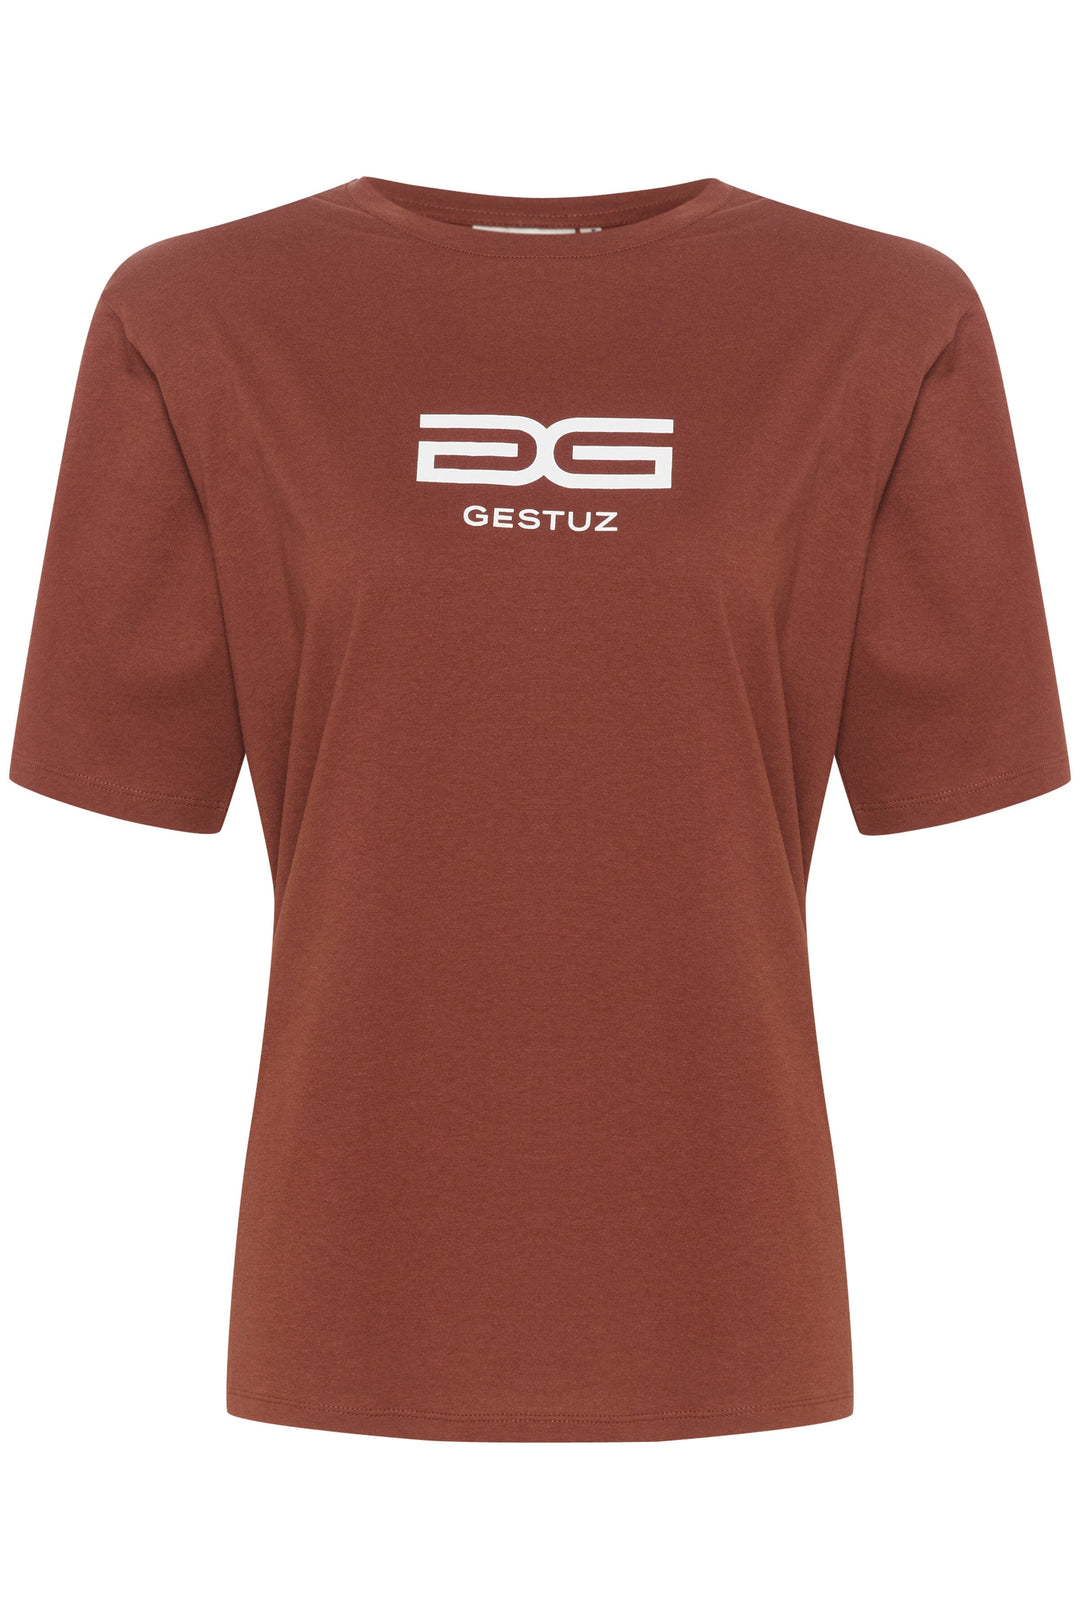 Gestuz - SamurillyGZ P tee - Desert brown T-shirts 